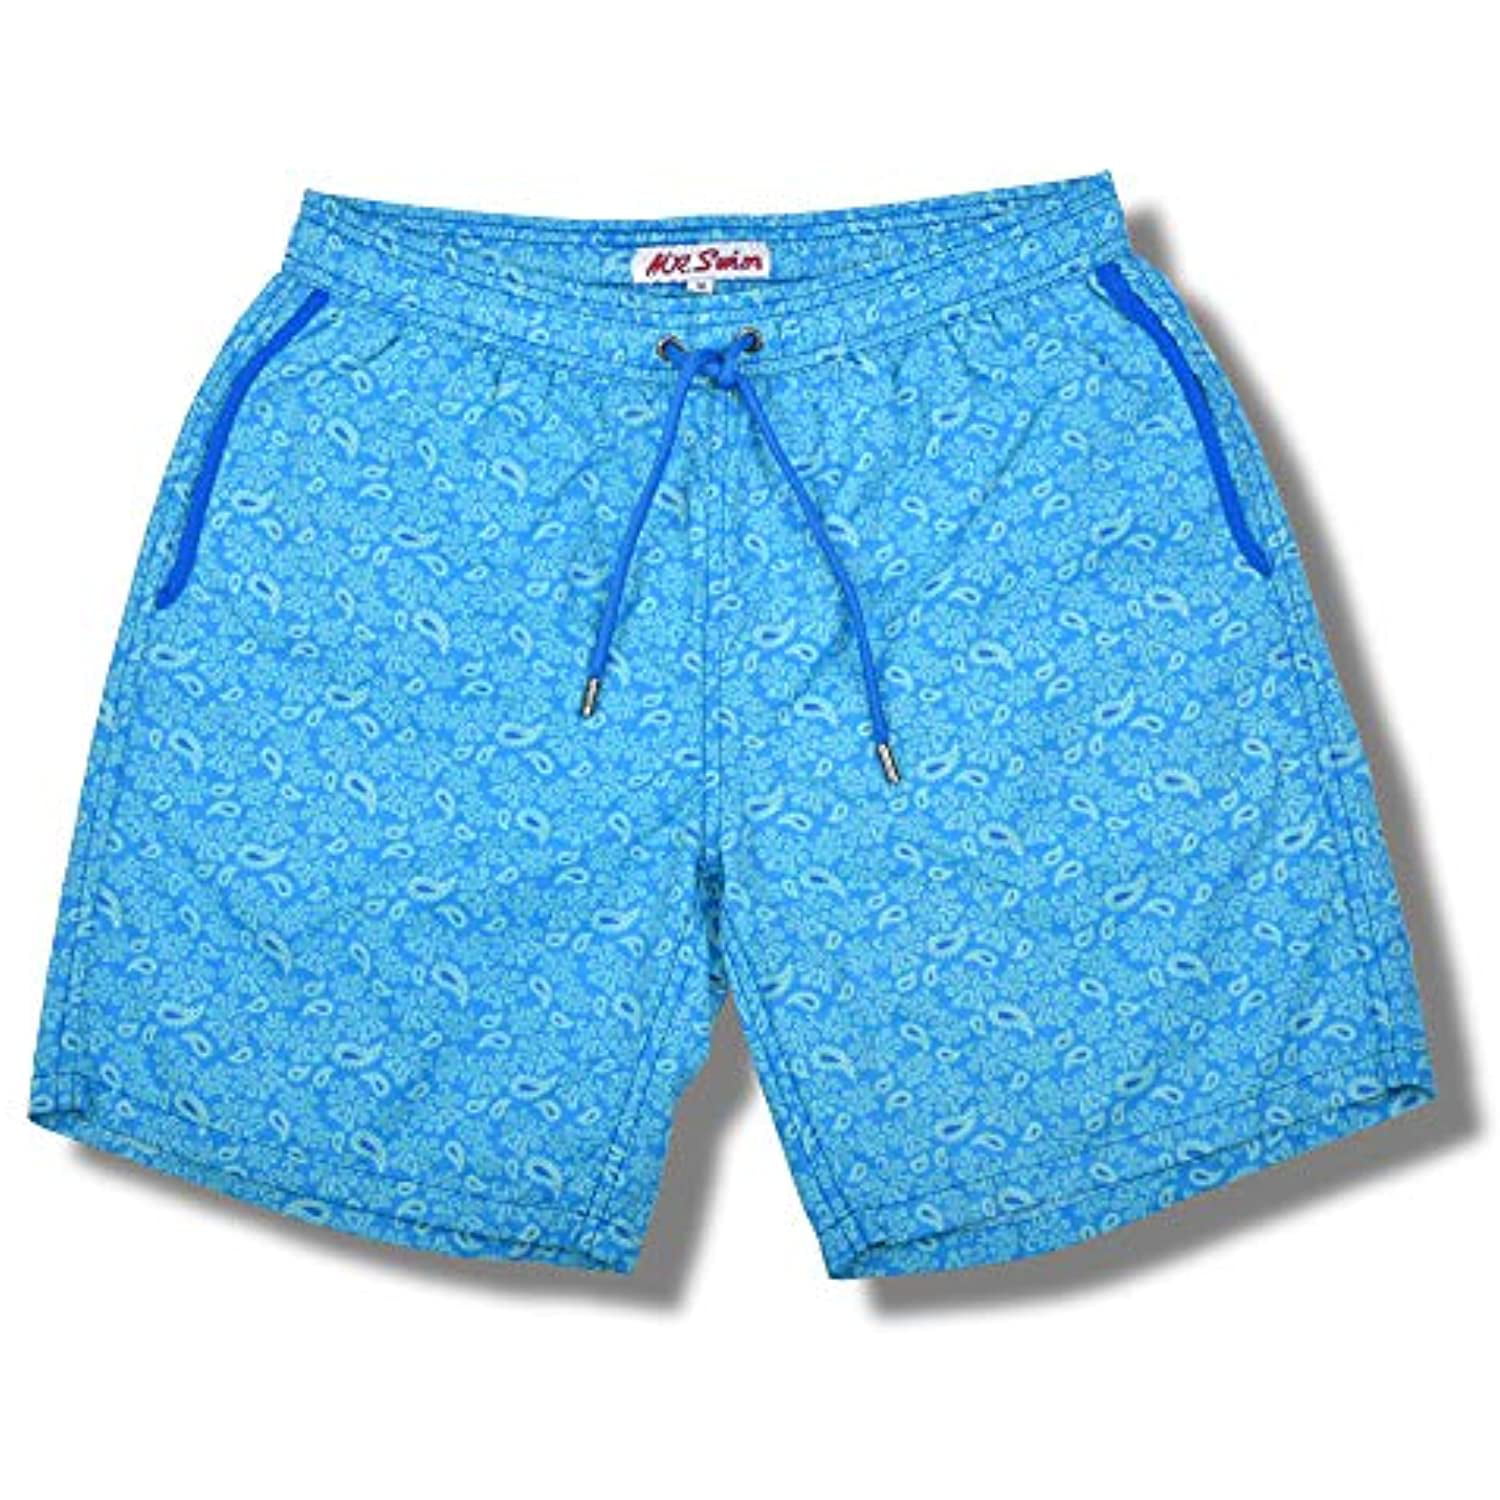 Blue Octopu Mens Beach Shorts Elastic Waist Pockets Lightweight Swimming Board Short Quick Dry Short Trunks 